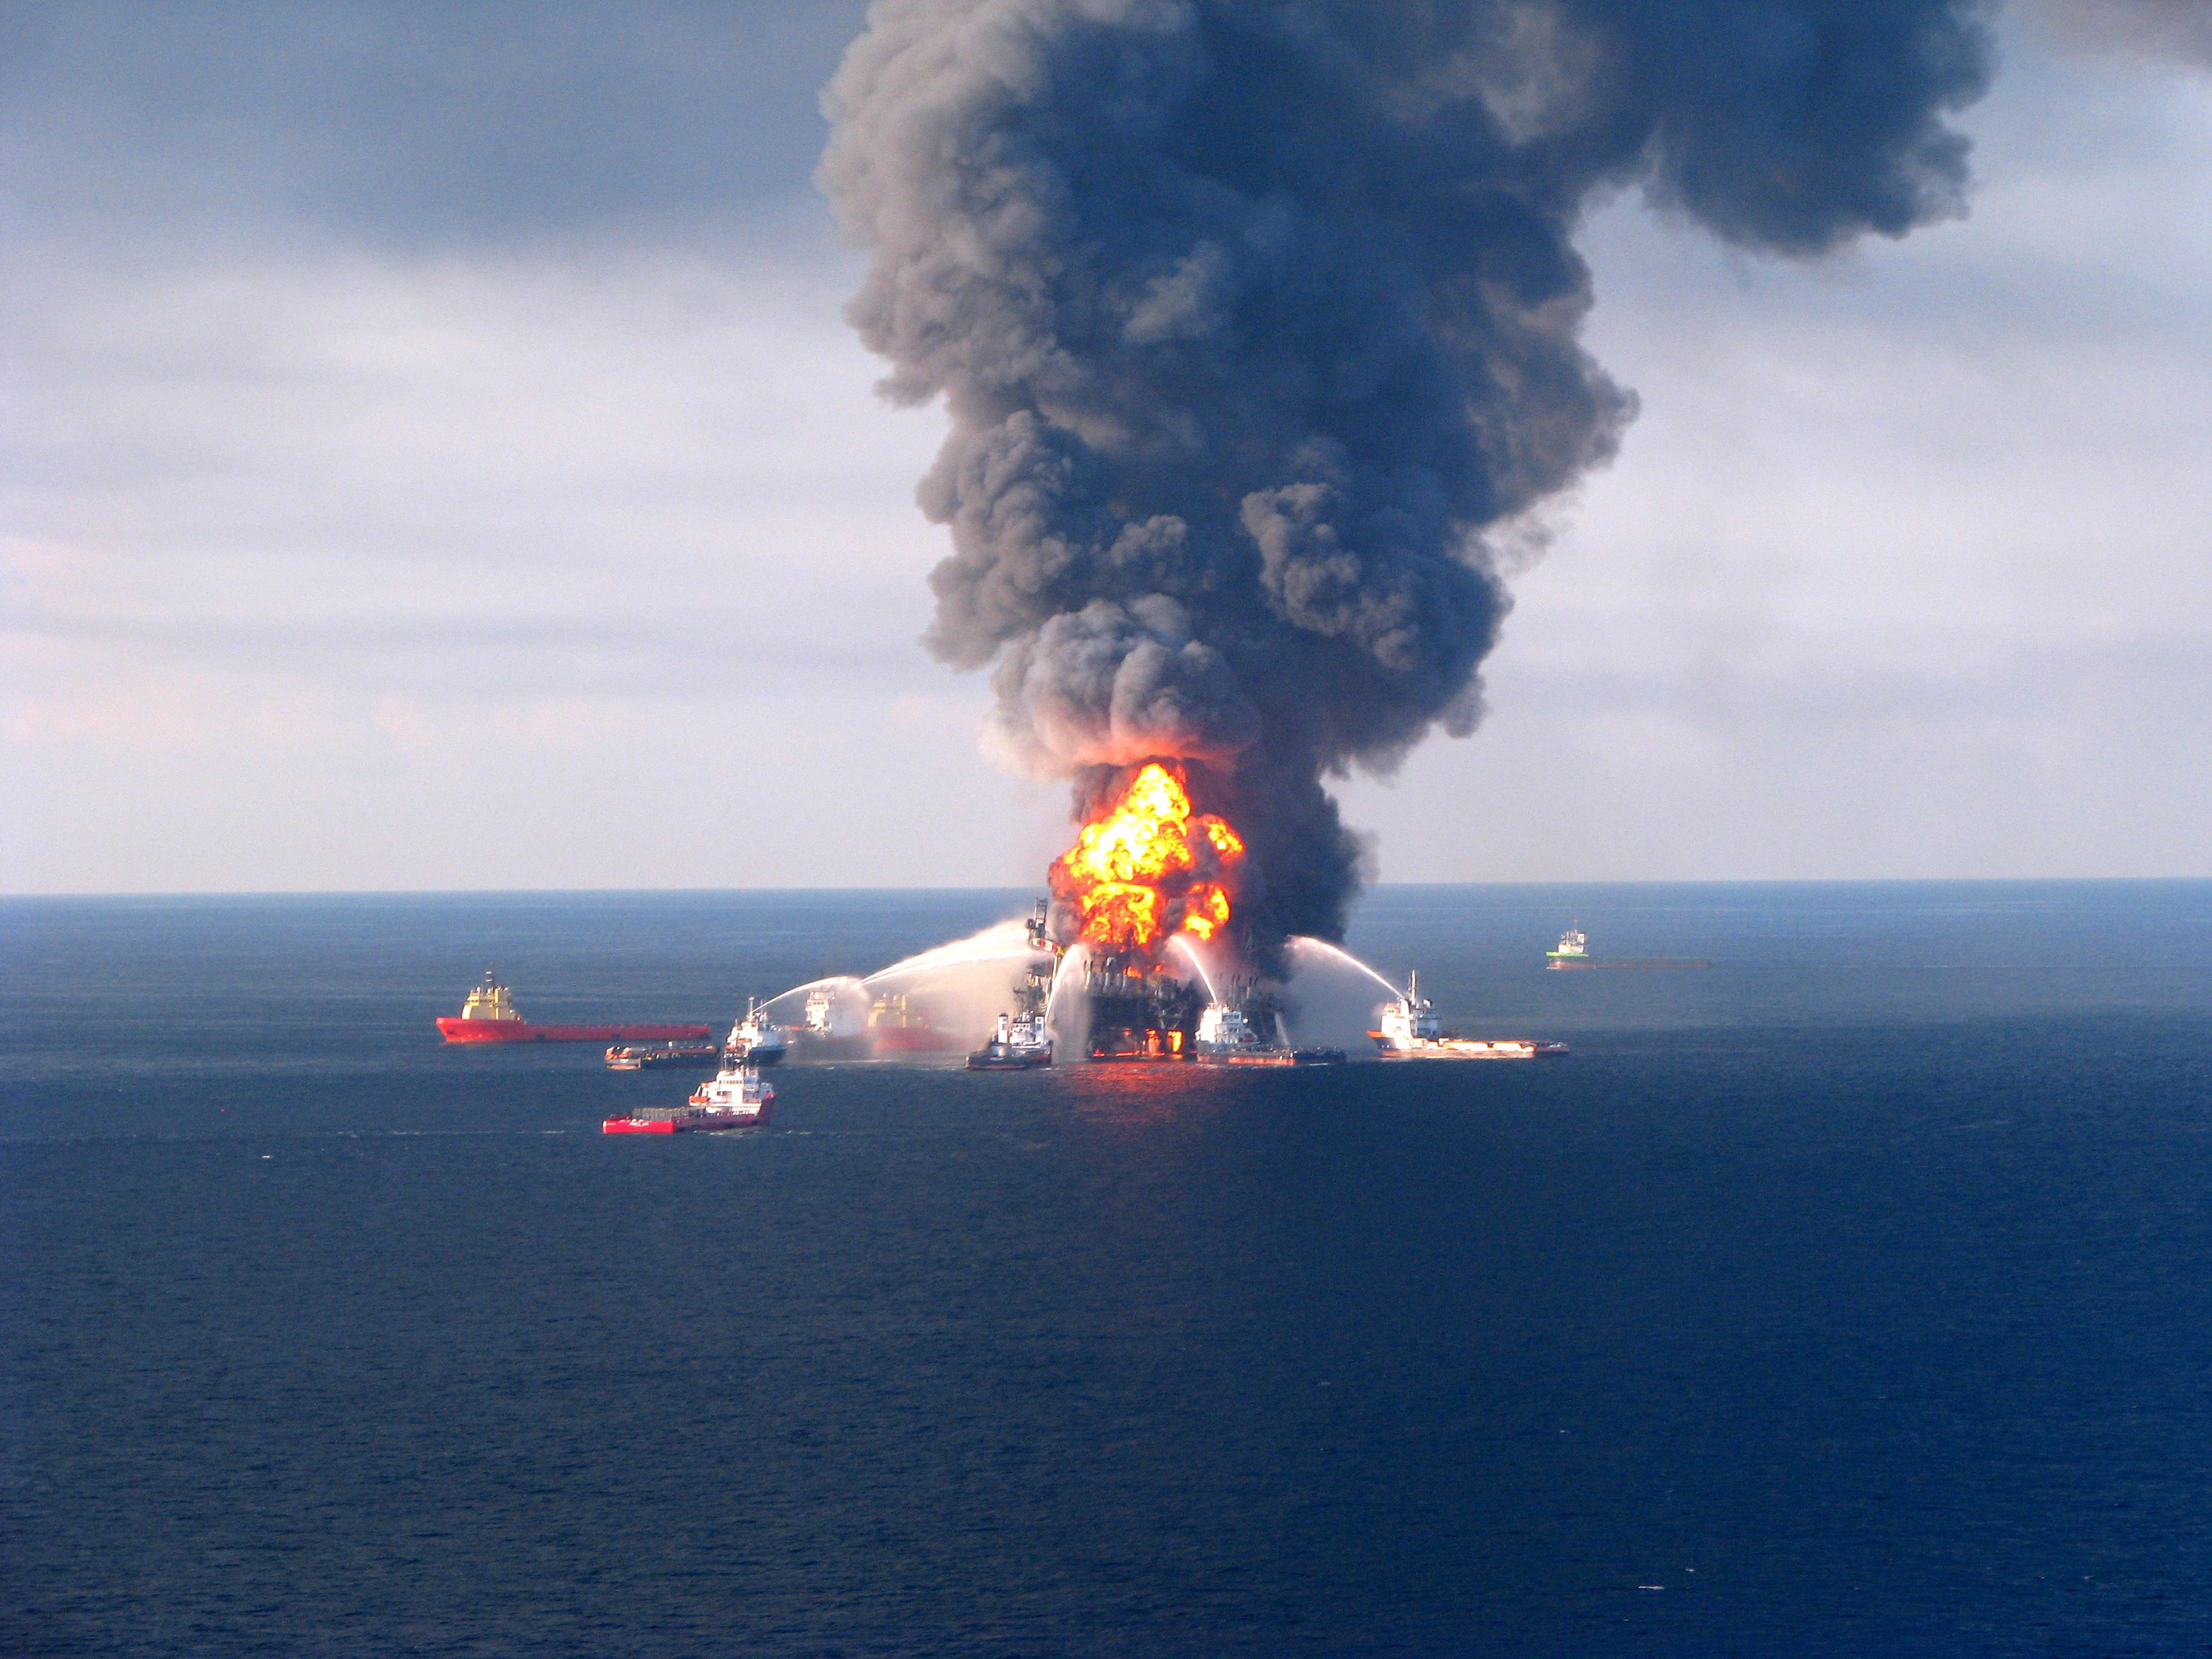 Взрыв буровых. Взрыв платформы Deepwater Horizon. Взрыв нефтяной платформы Deepwater Horizon в мексиканском заливе. Нефтяная катастрофа в мексиканском заливе 2010. Разлив нефти в мексиканском заливе 1979.